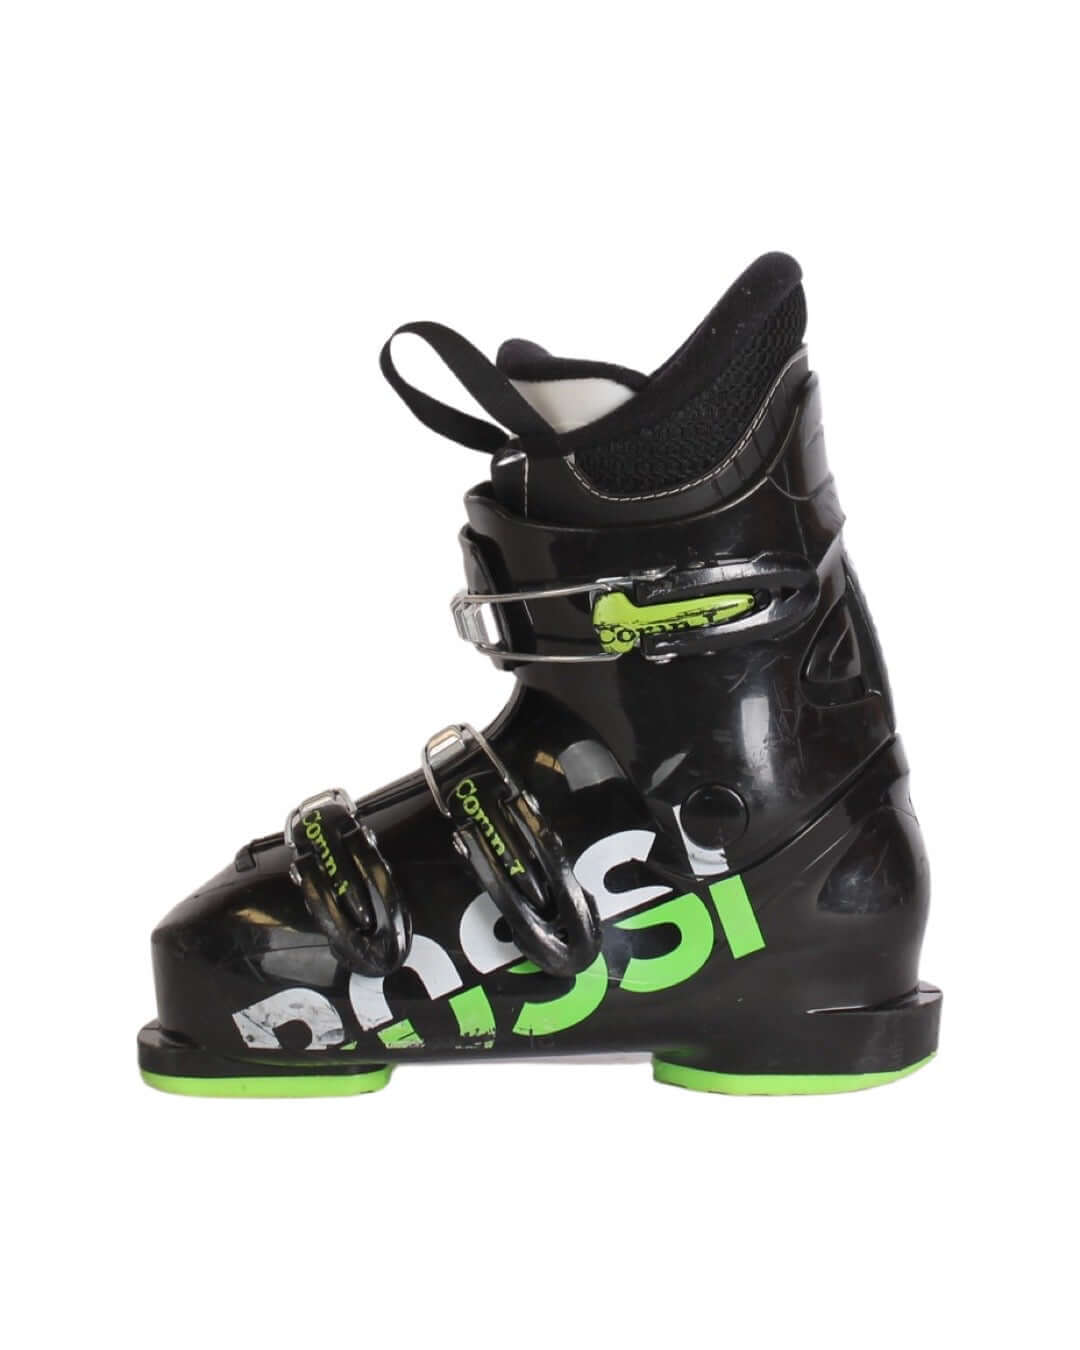 Støvler - Rossignol Comp JR3 - fra 349 kr